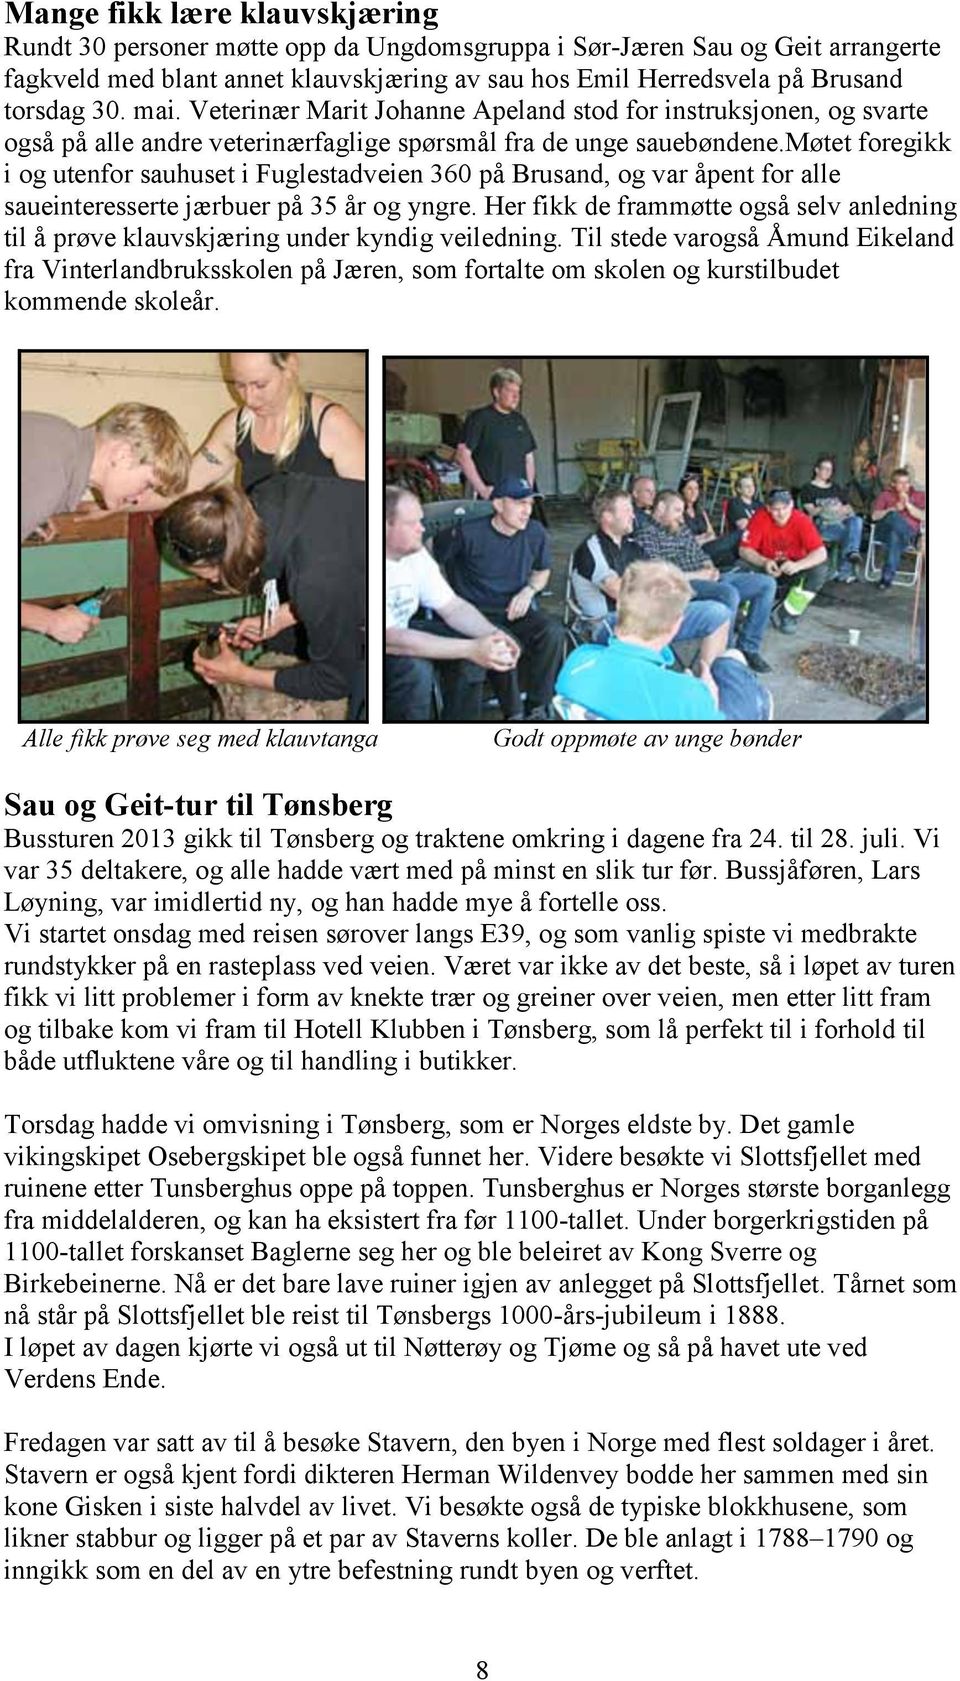 møtet foregikk i og utenfor sauhuset i Fuglestadveien 360 på Brusand, og var åpent for alle saueinteresserte jærbuer på 35 år og yngre.